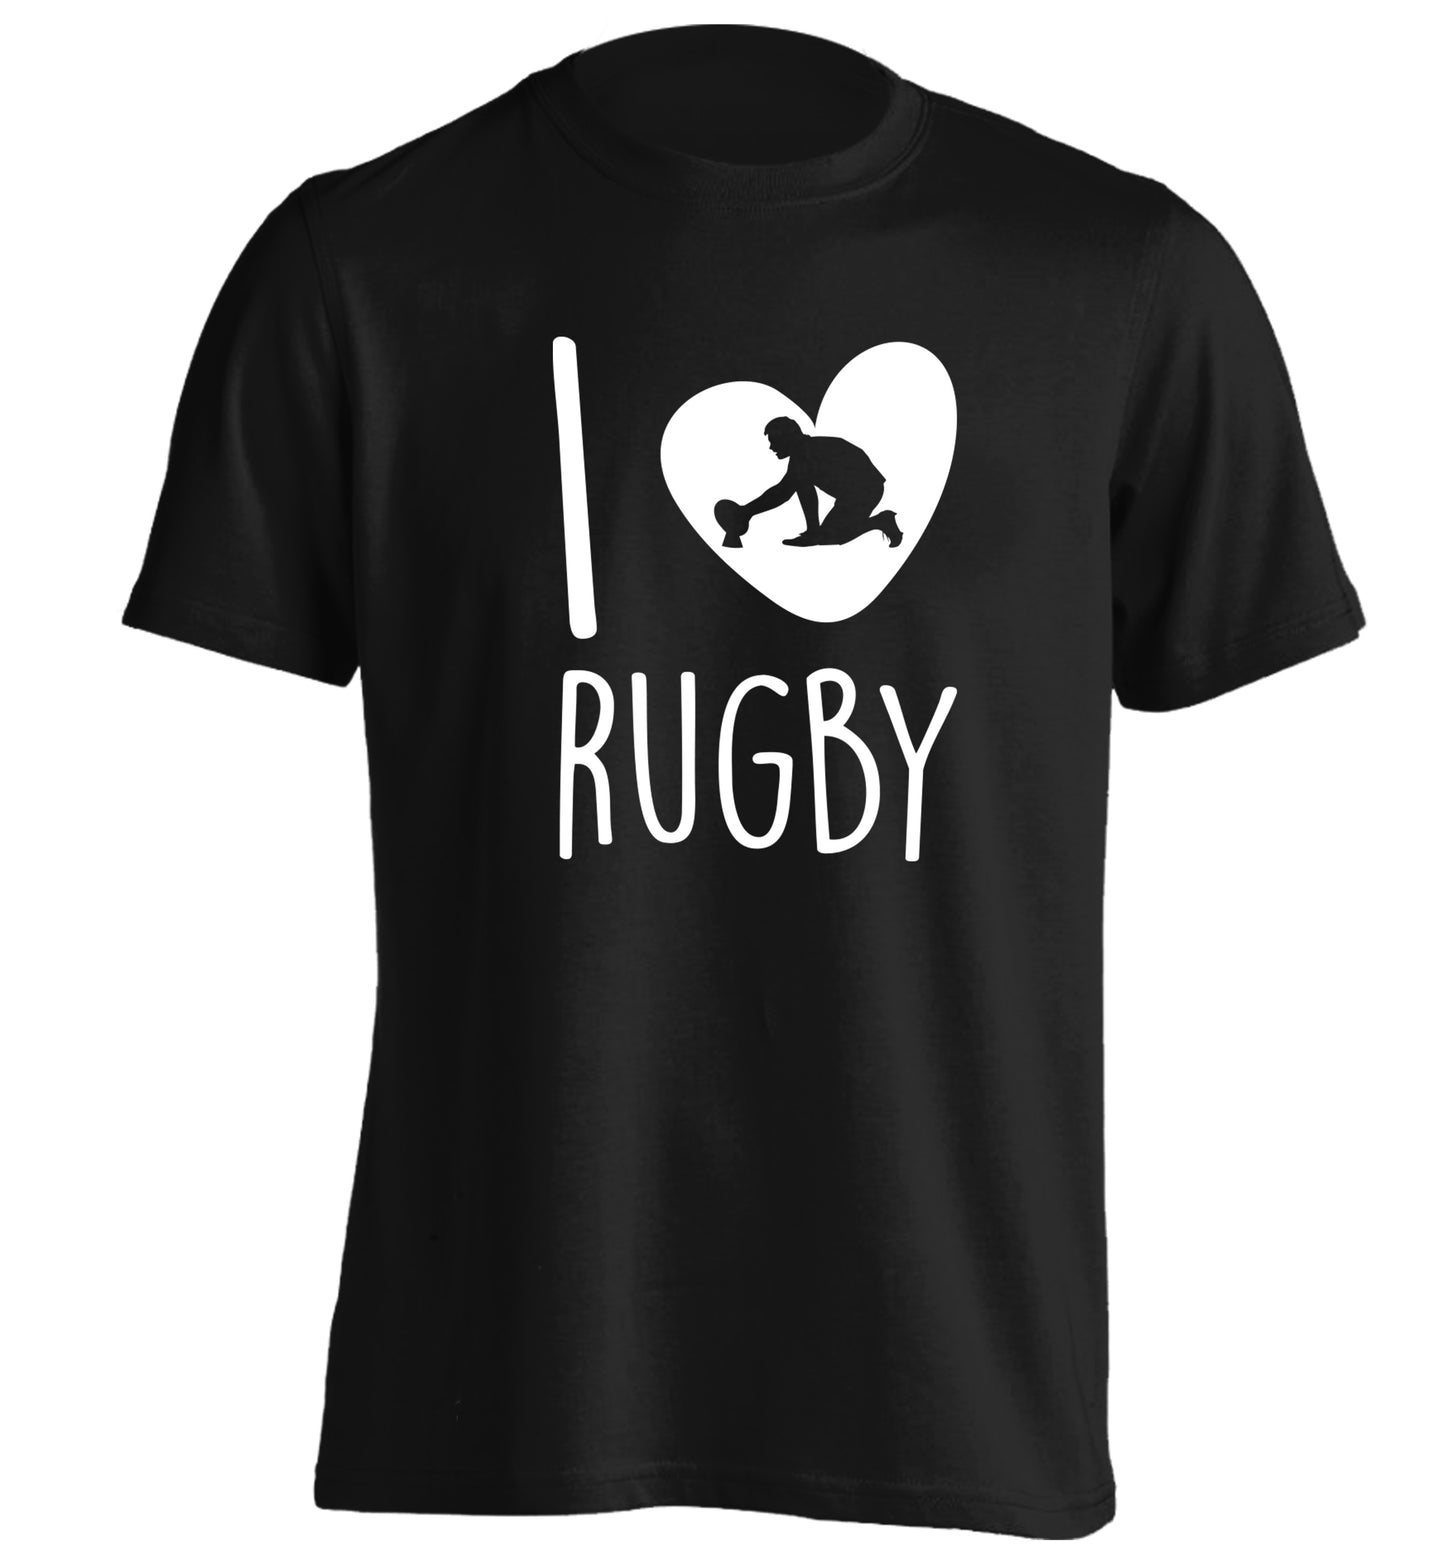 I love rugby adults unisex black Tshirt 2XL